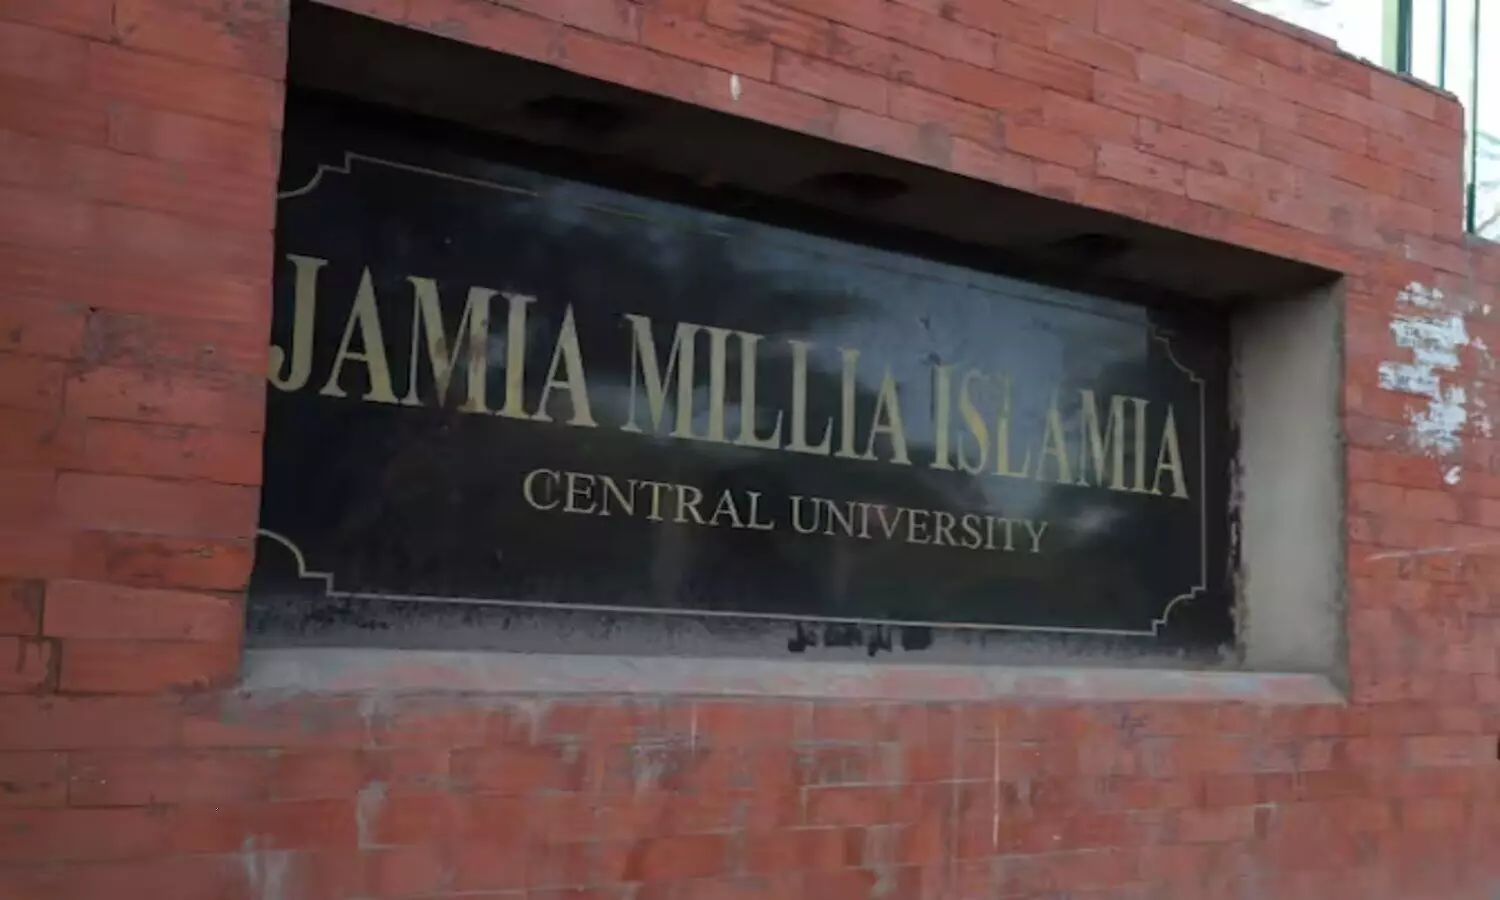 Jamia Millia Islamia University